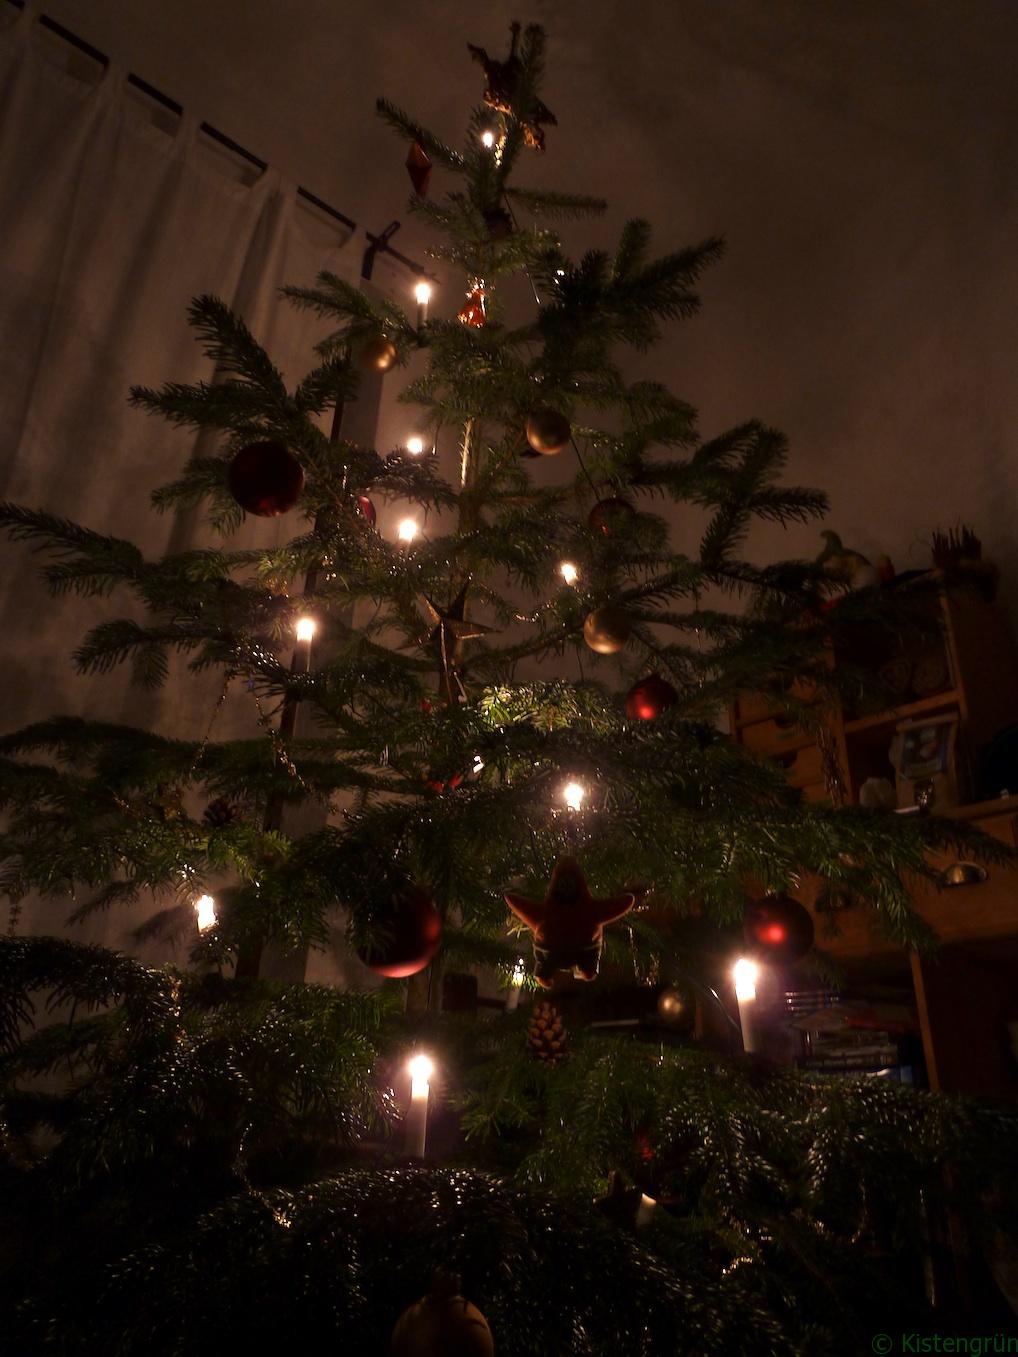 Weihnachten: Geschmückter Weihnachtsbaum im Kerzenlicht